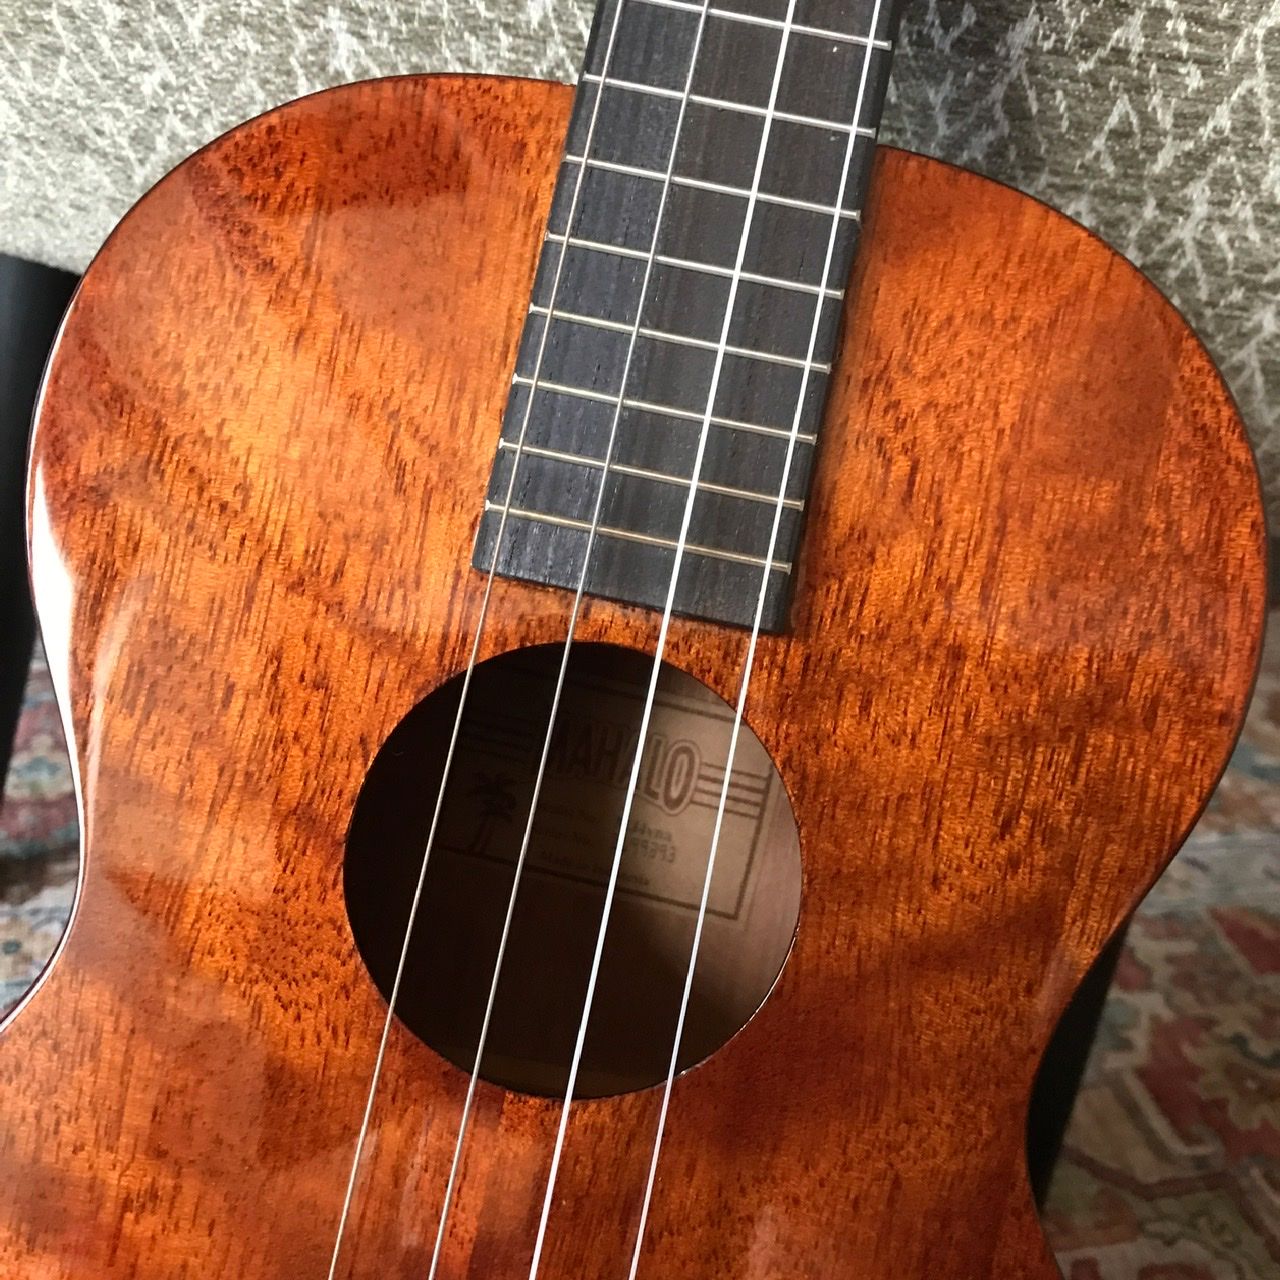 Mahalo bariton ukulele